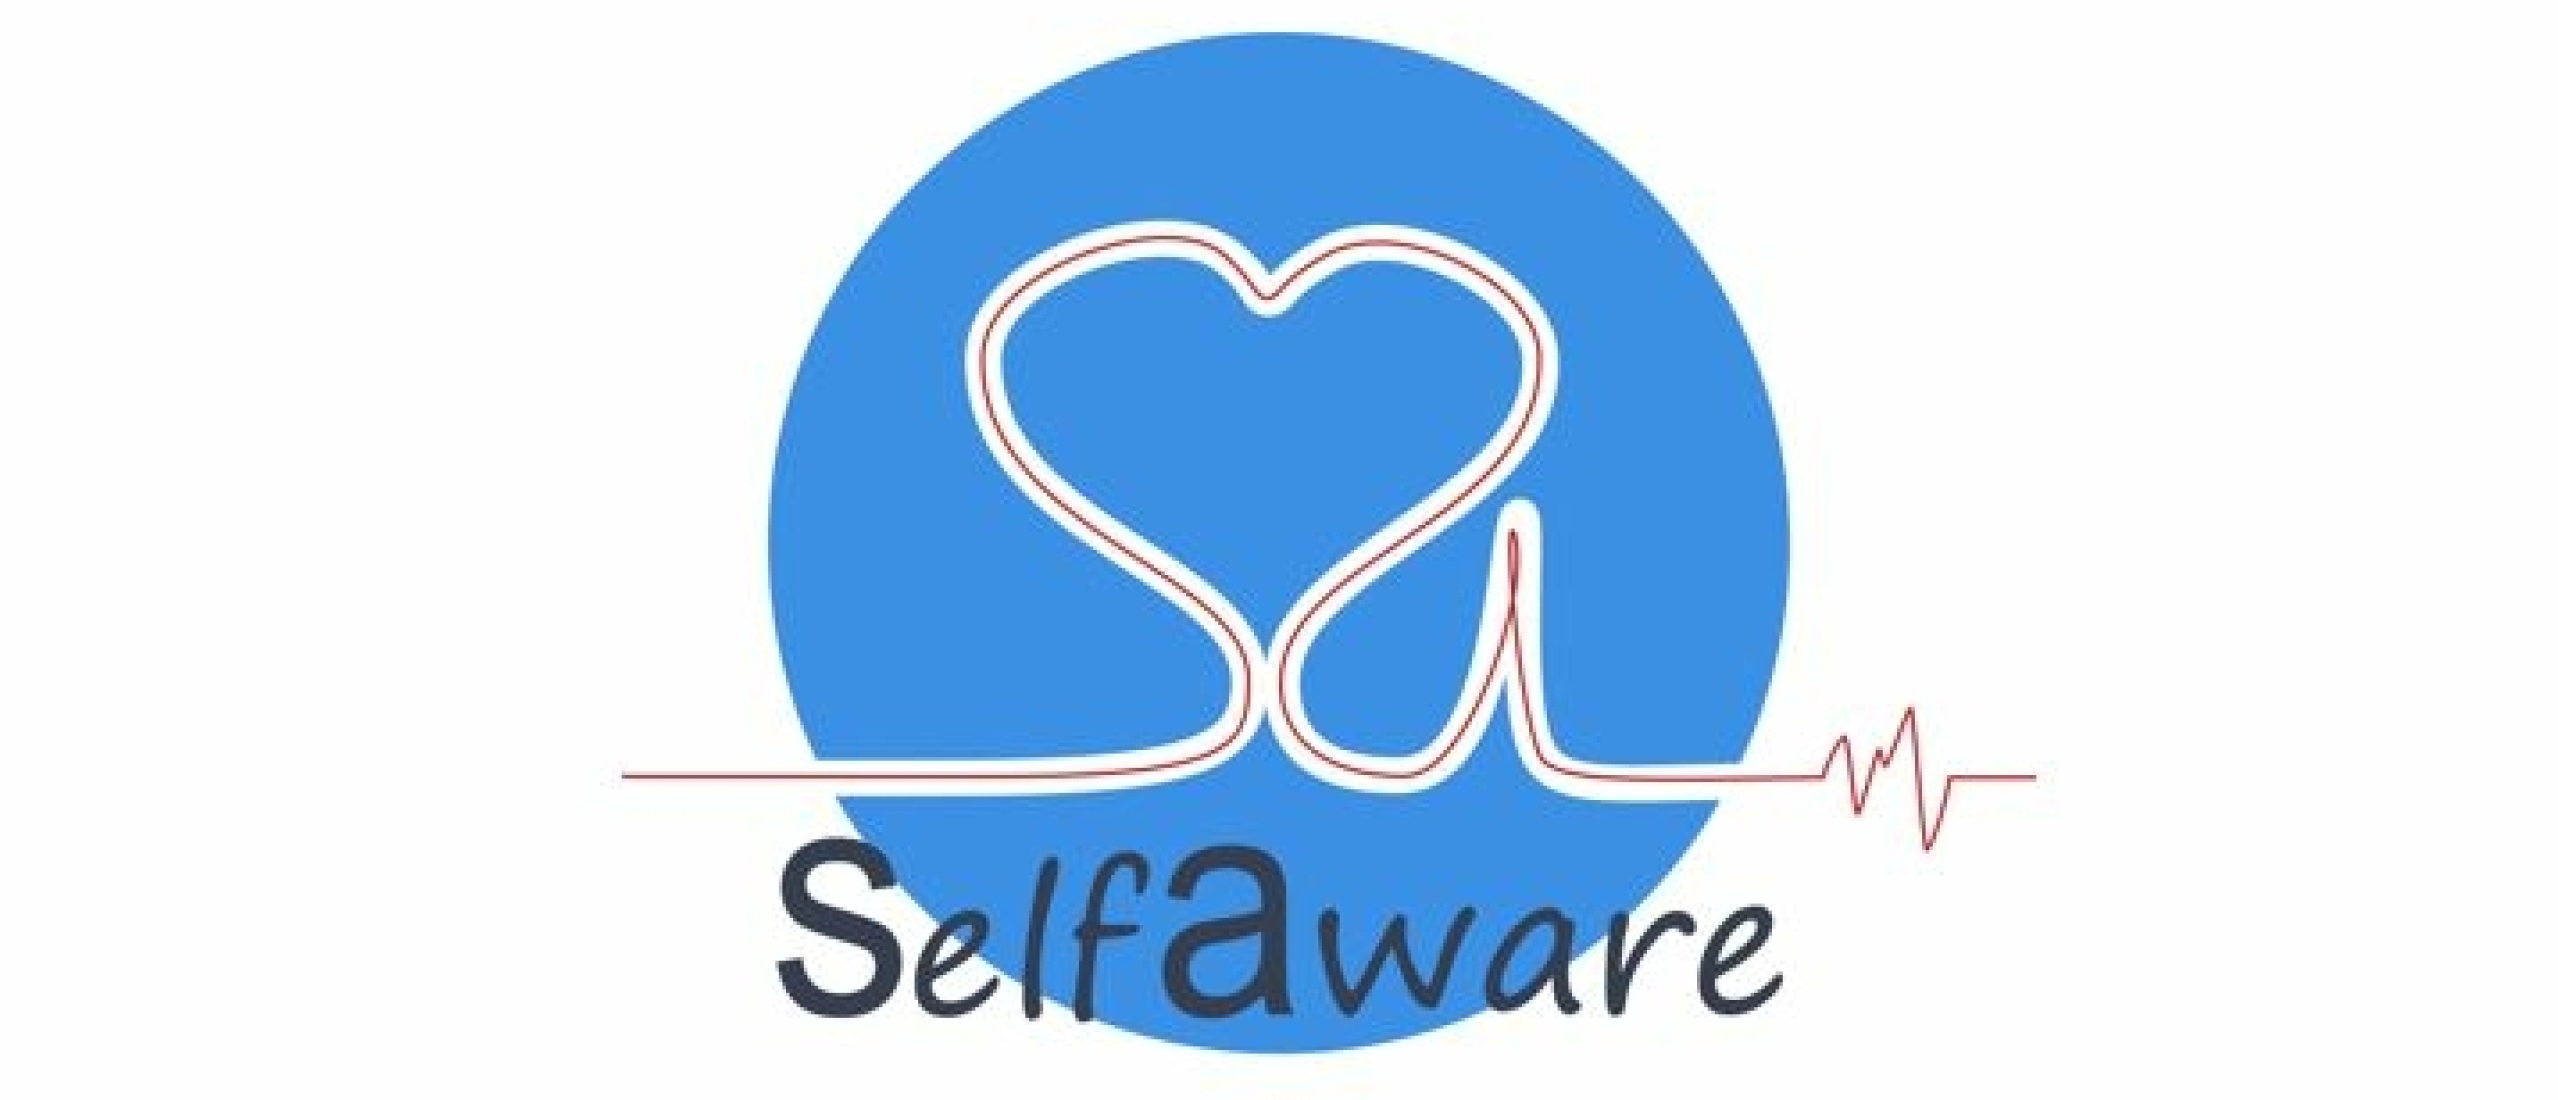 Waarom de naam Selfaware